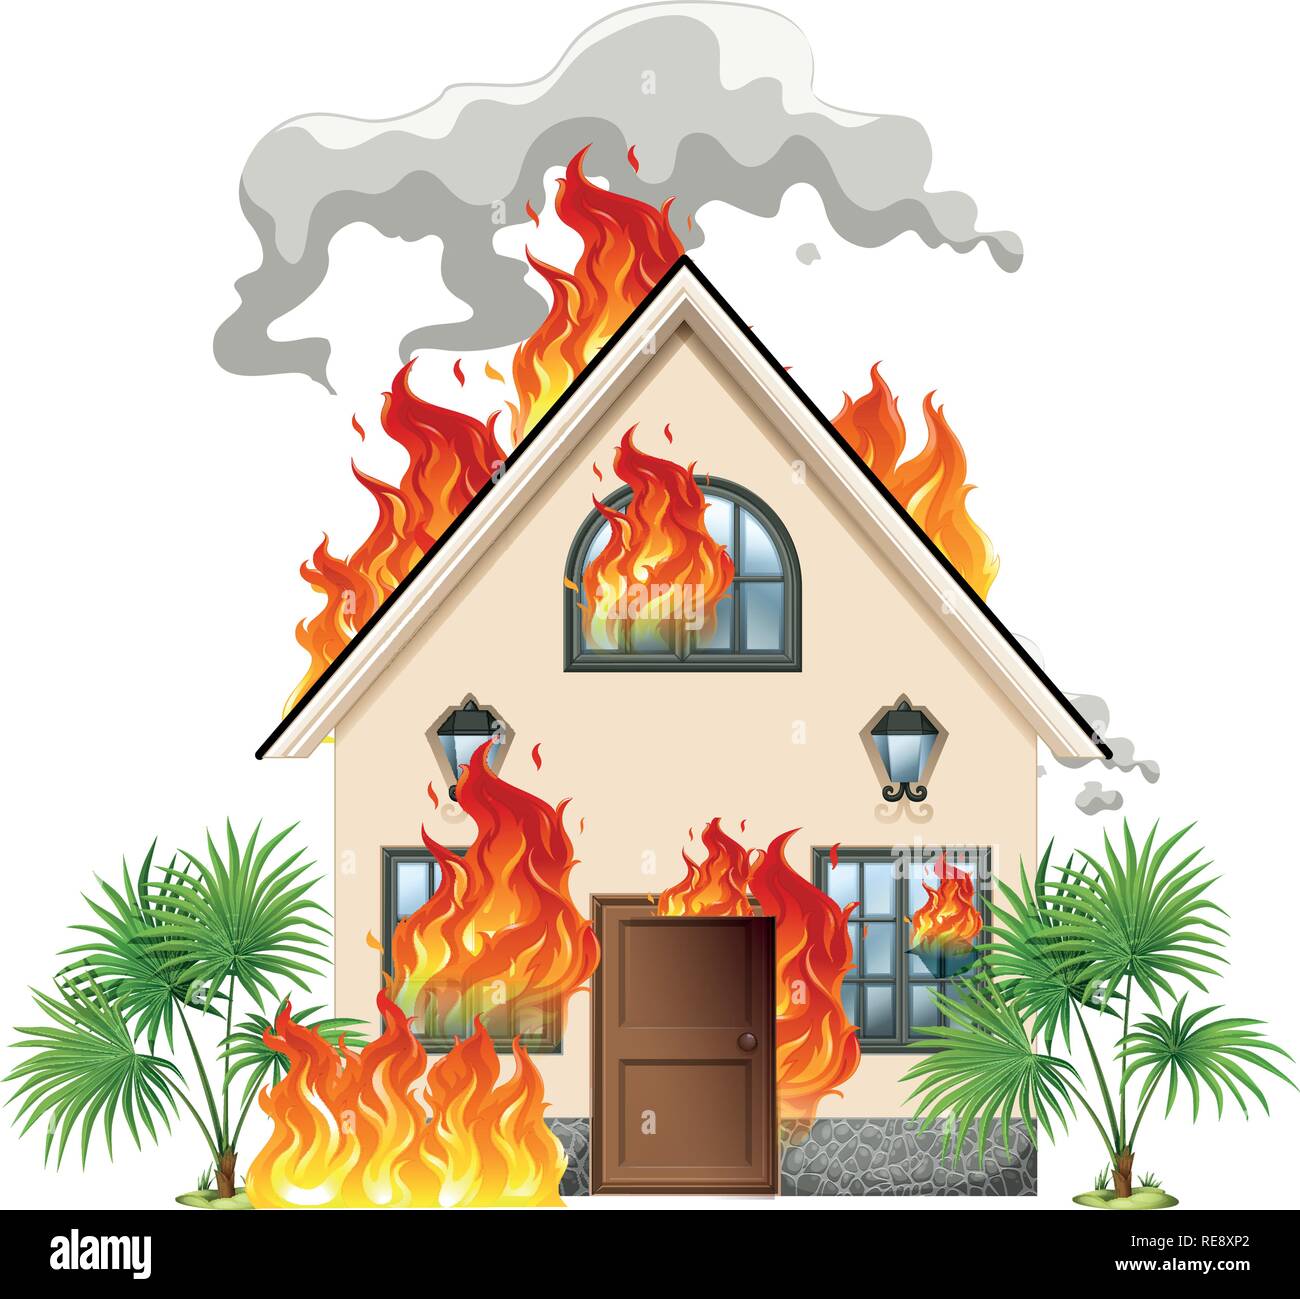 casa-moderna-en-el-fuego-ilustracion-re8xp2.jpg